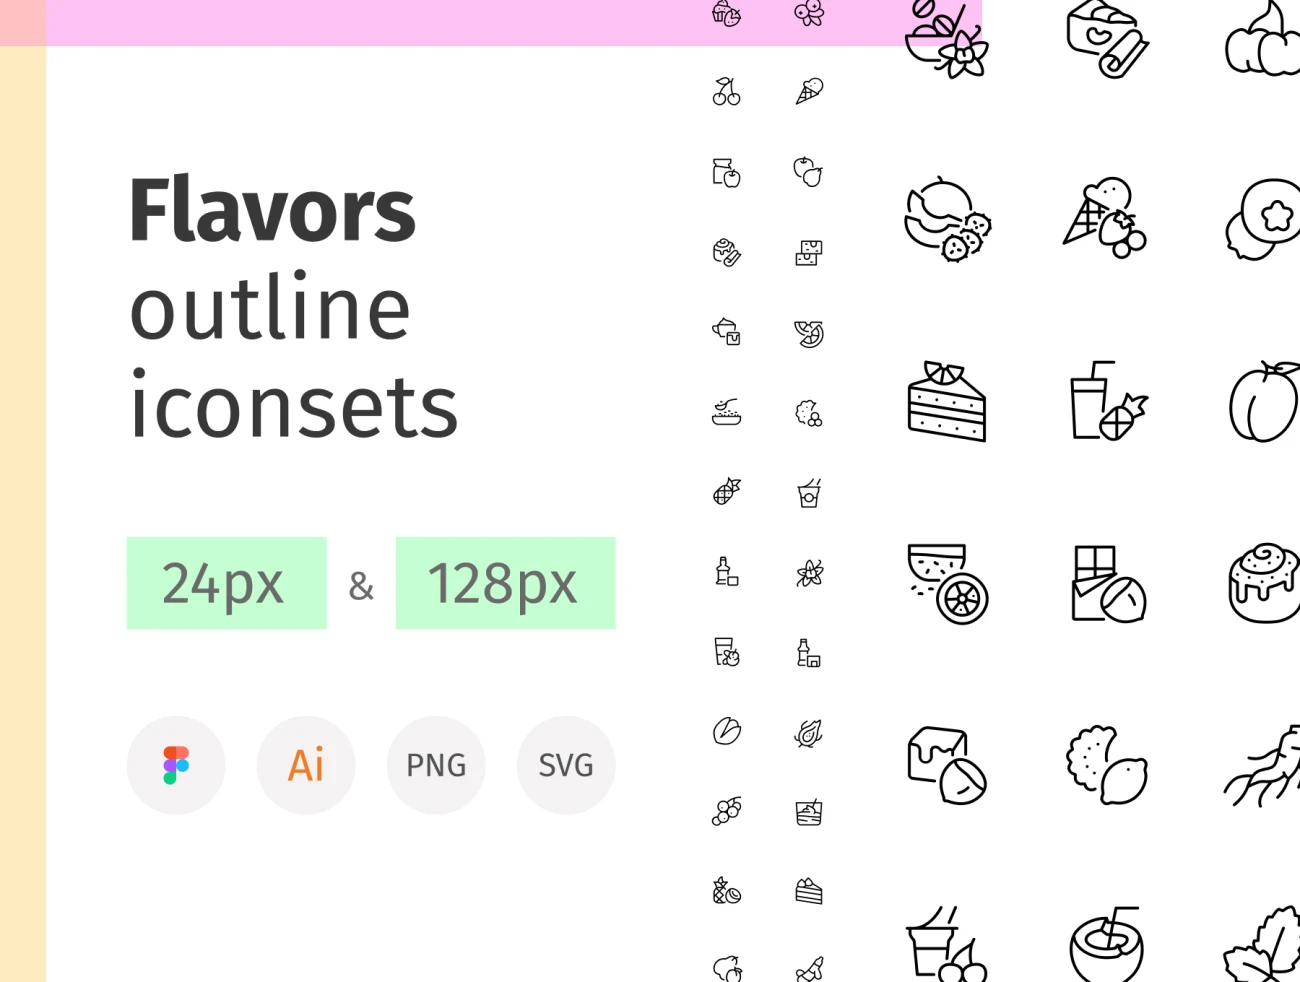 270款水果甜品饮料图标素材下载 Flavors outline iconset .psd .ai .figma插图1